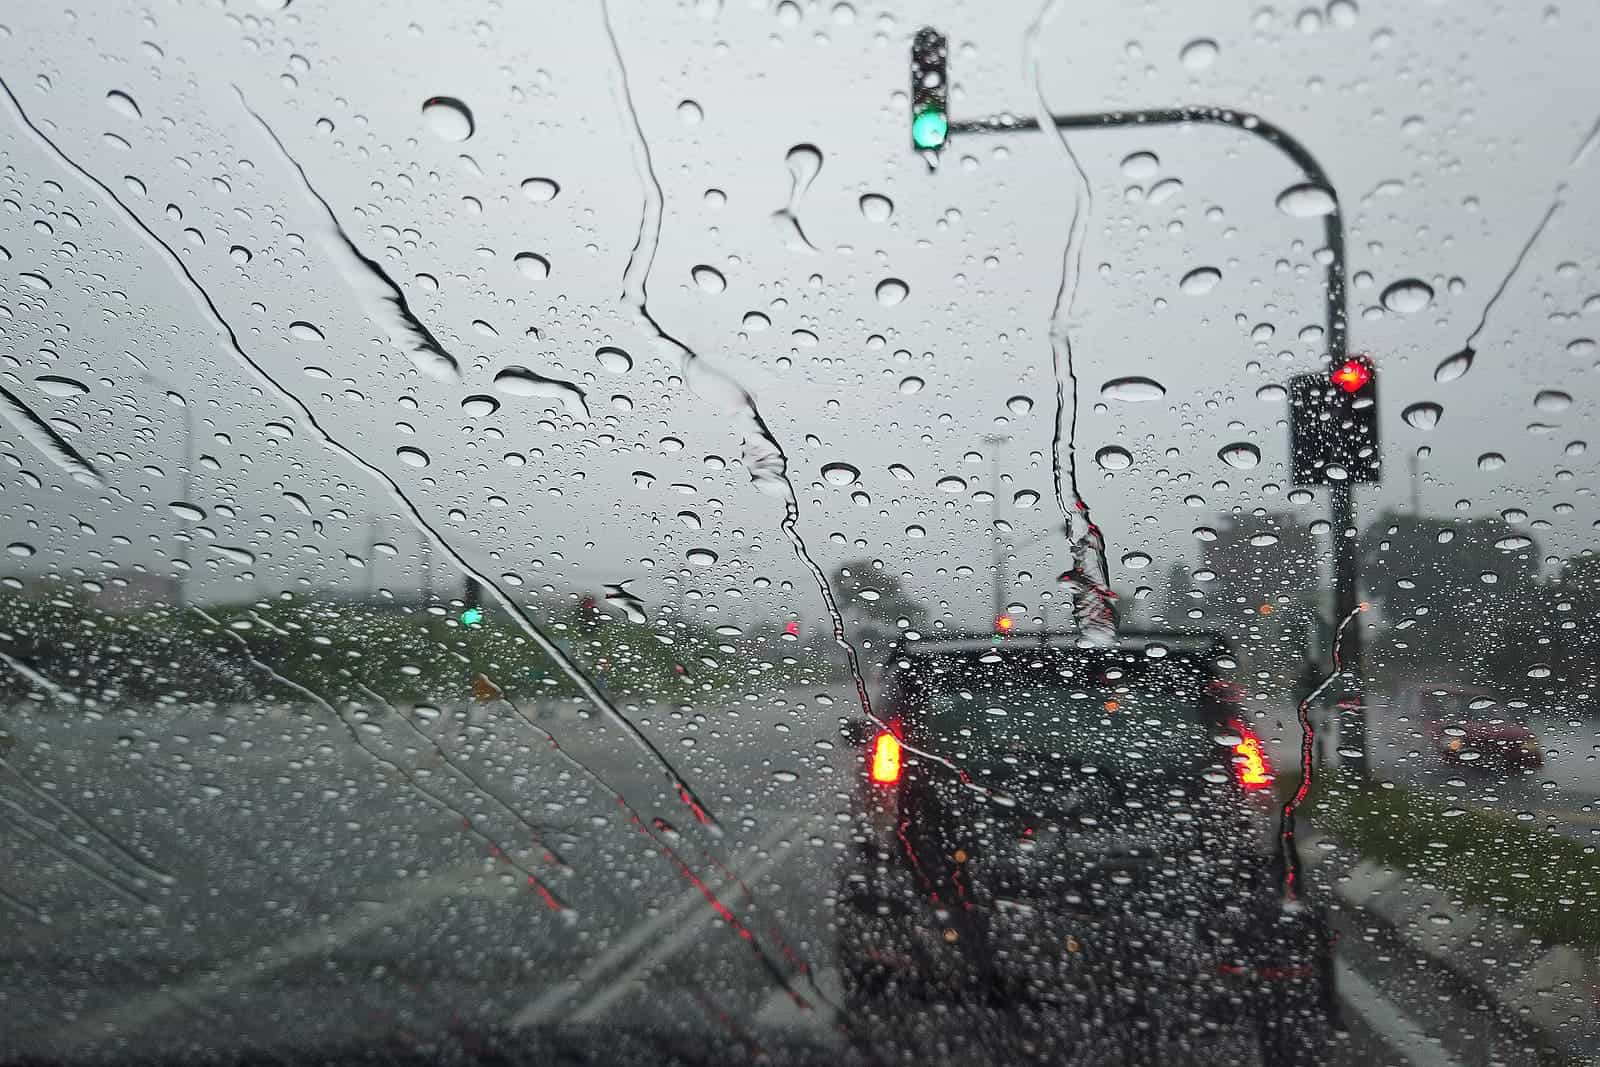 đi đường an toàn trong trời mưa như thế nào